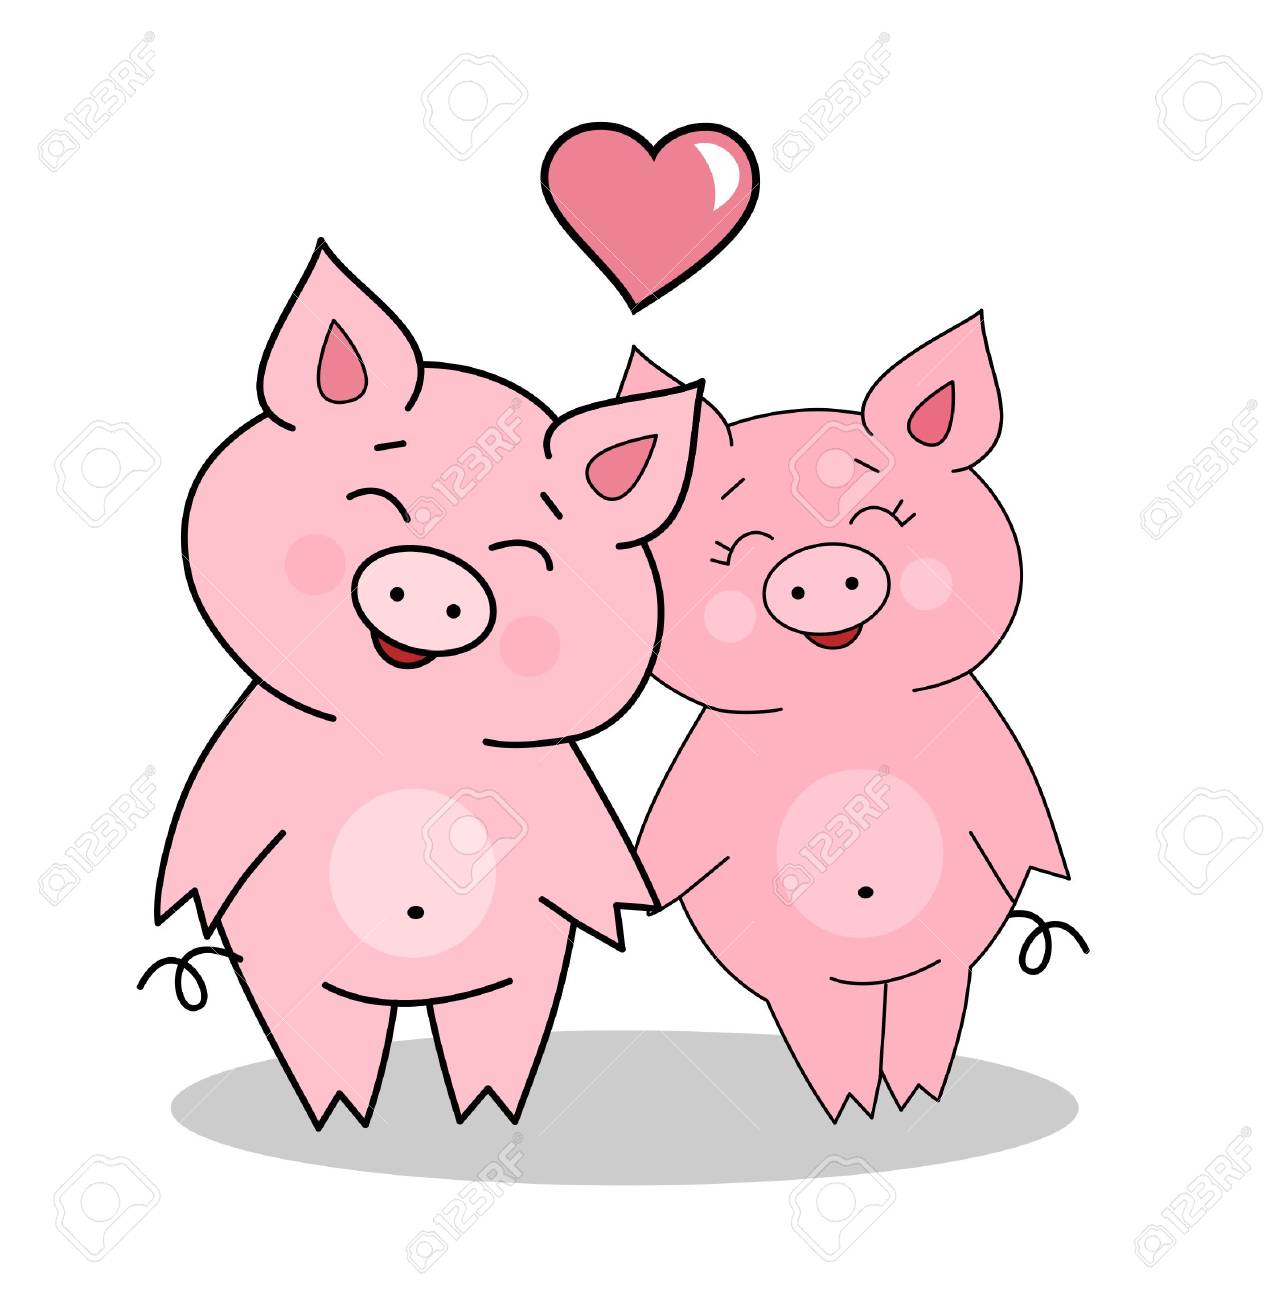 San Valentín, cerdos enamorados - Cosas divertidas